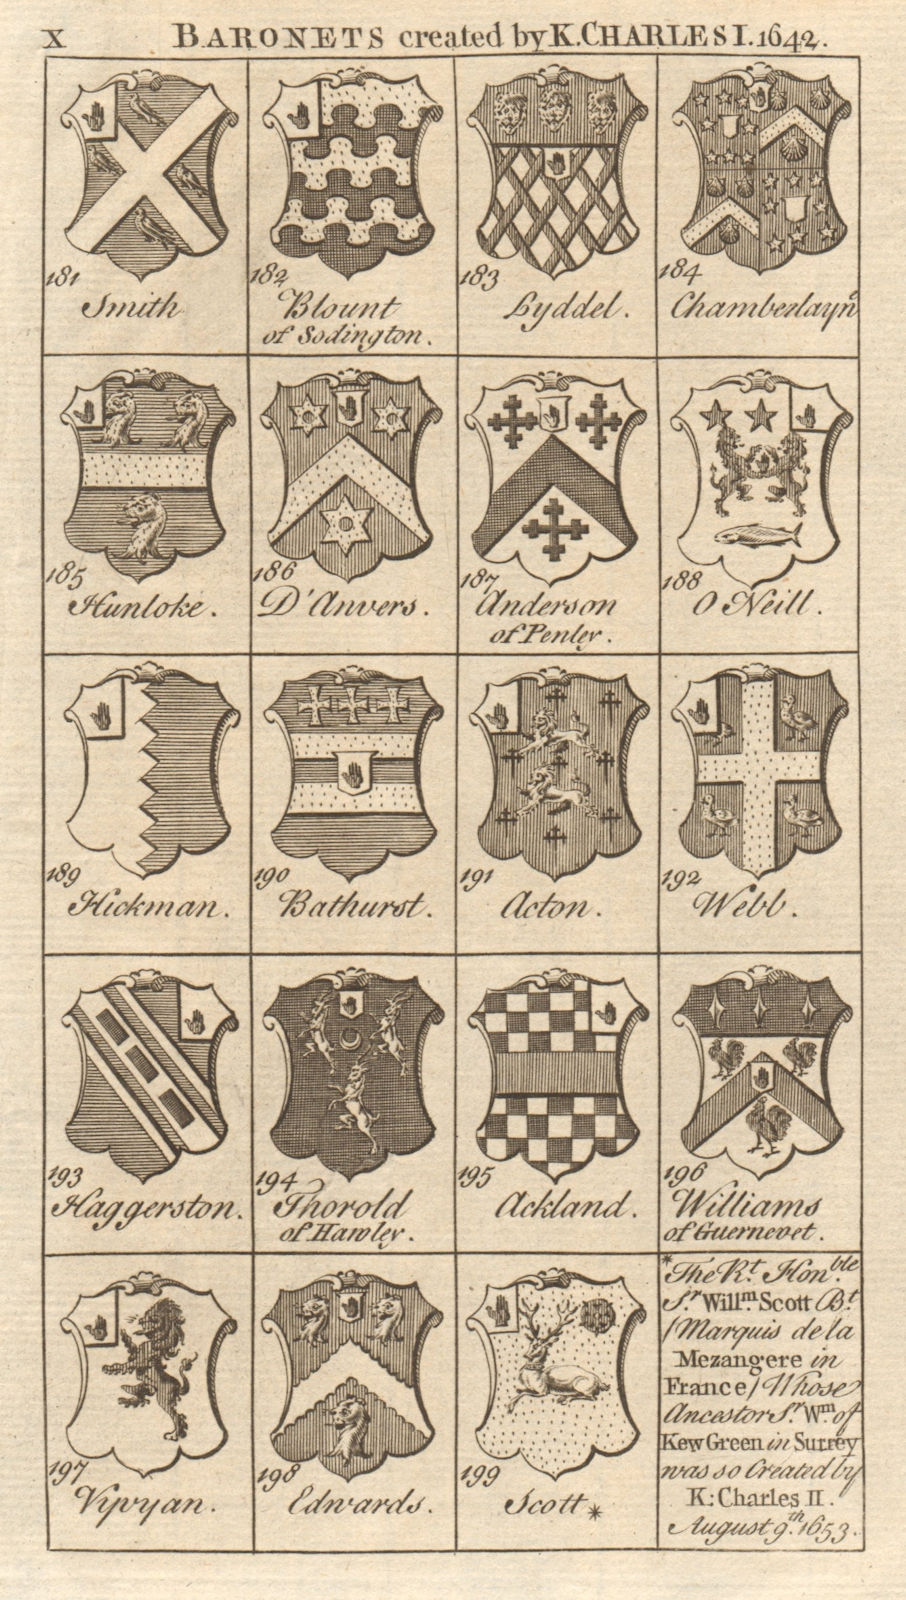 Charles I Baronets 1642 Smith Blount Lyddel Acton Webb Vyvyan Edwards Scott 1751